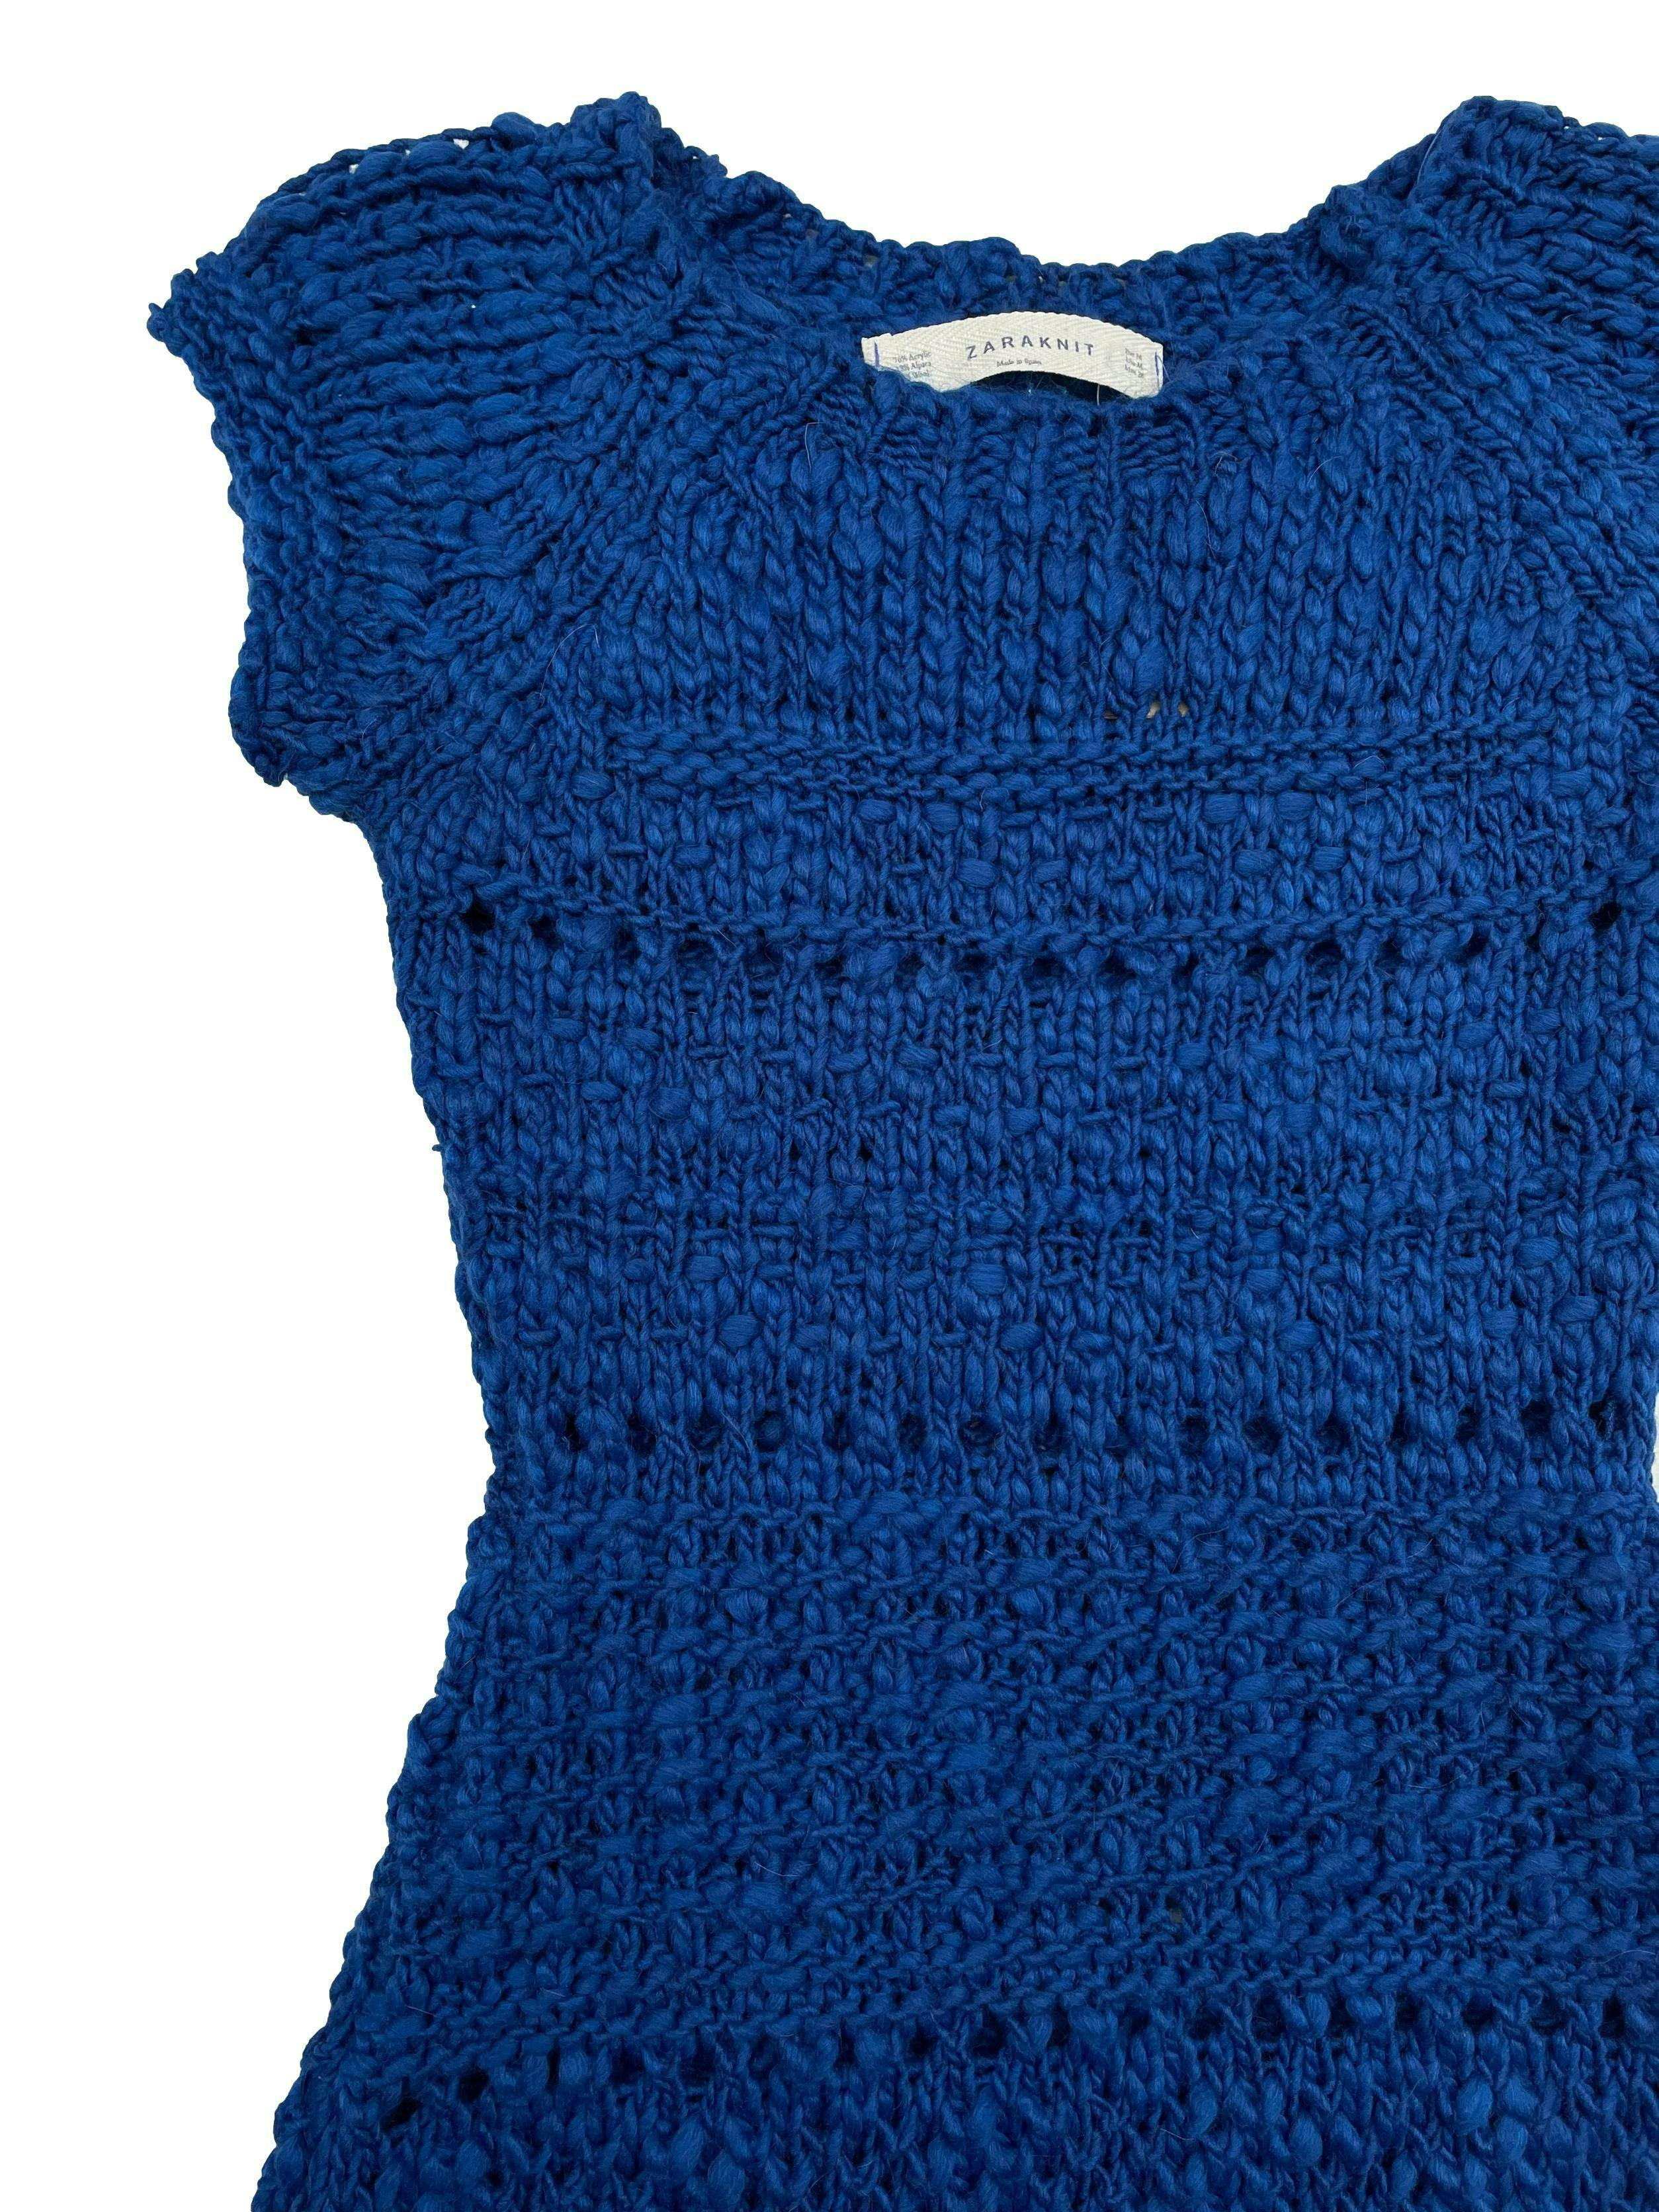 Vestido Zara azul tejido grueso con detalles calados, mezcla de lana. Busto 84cm sin estirar Largo 80cm